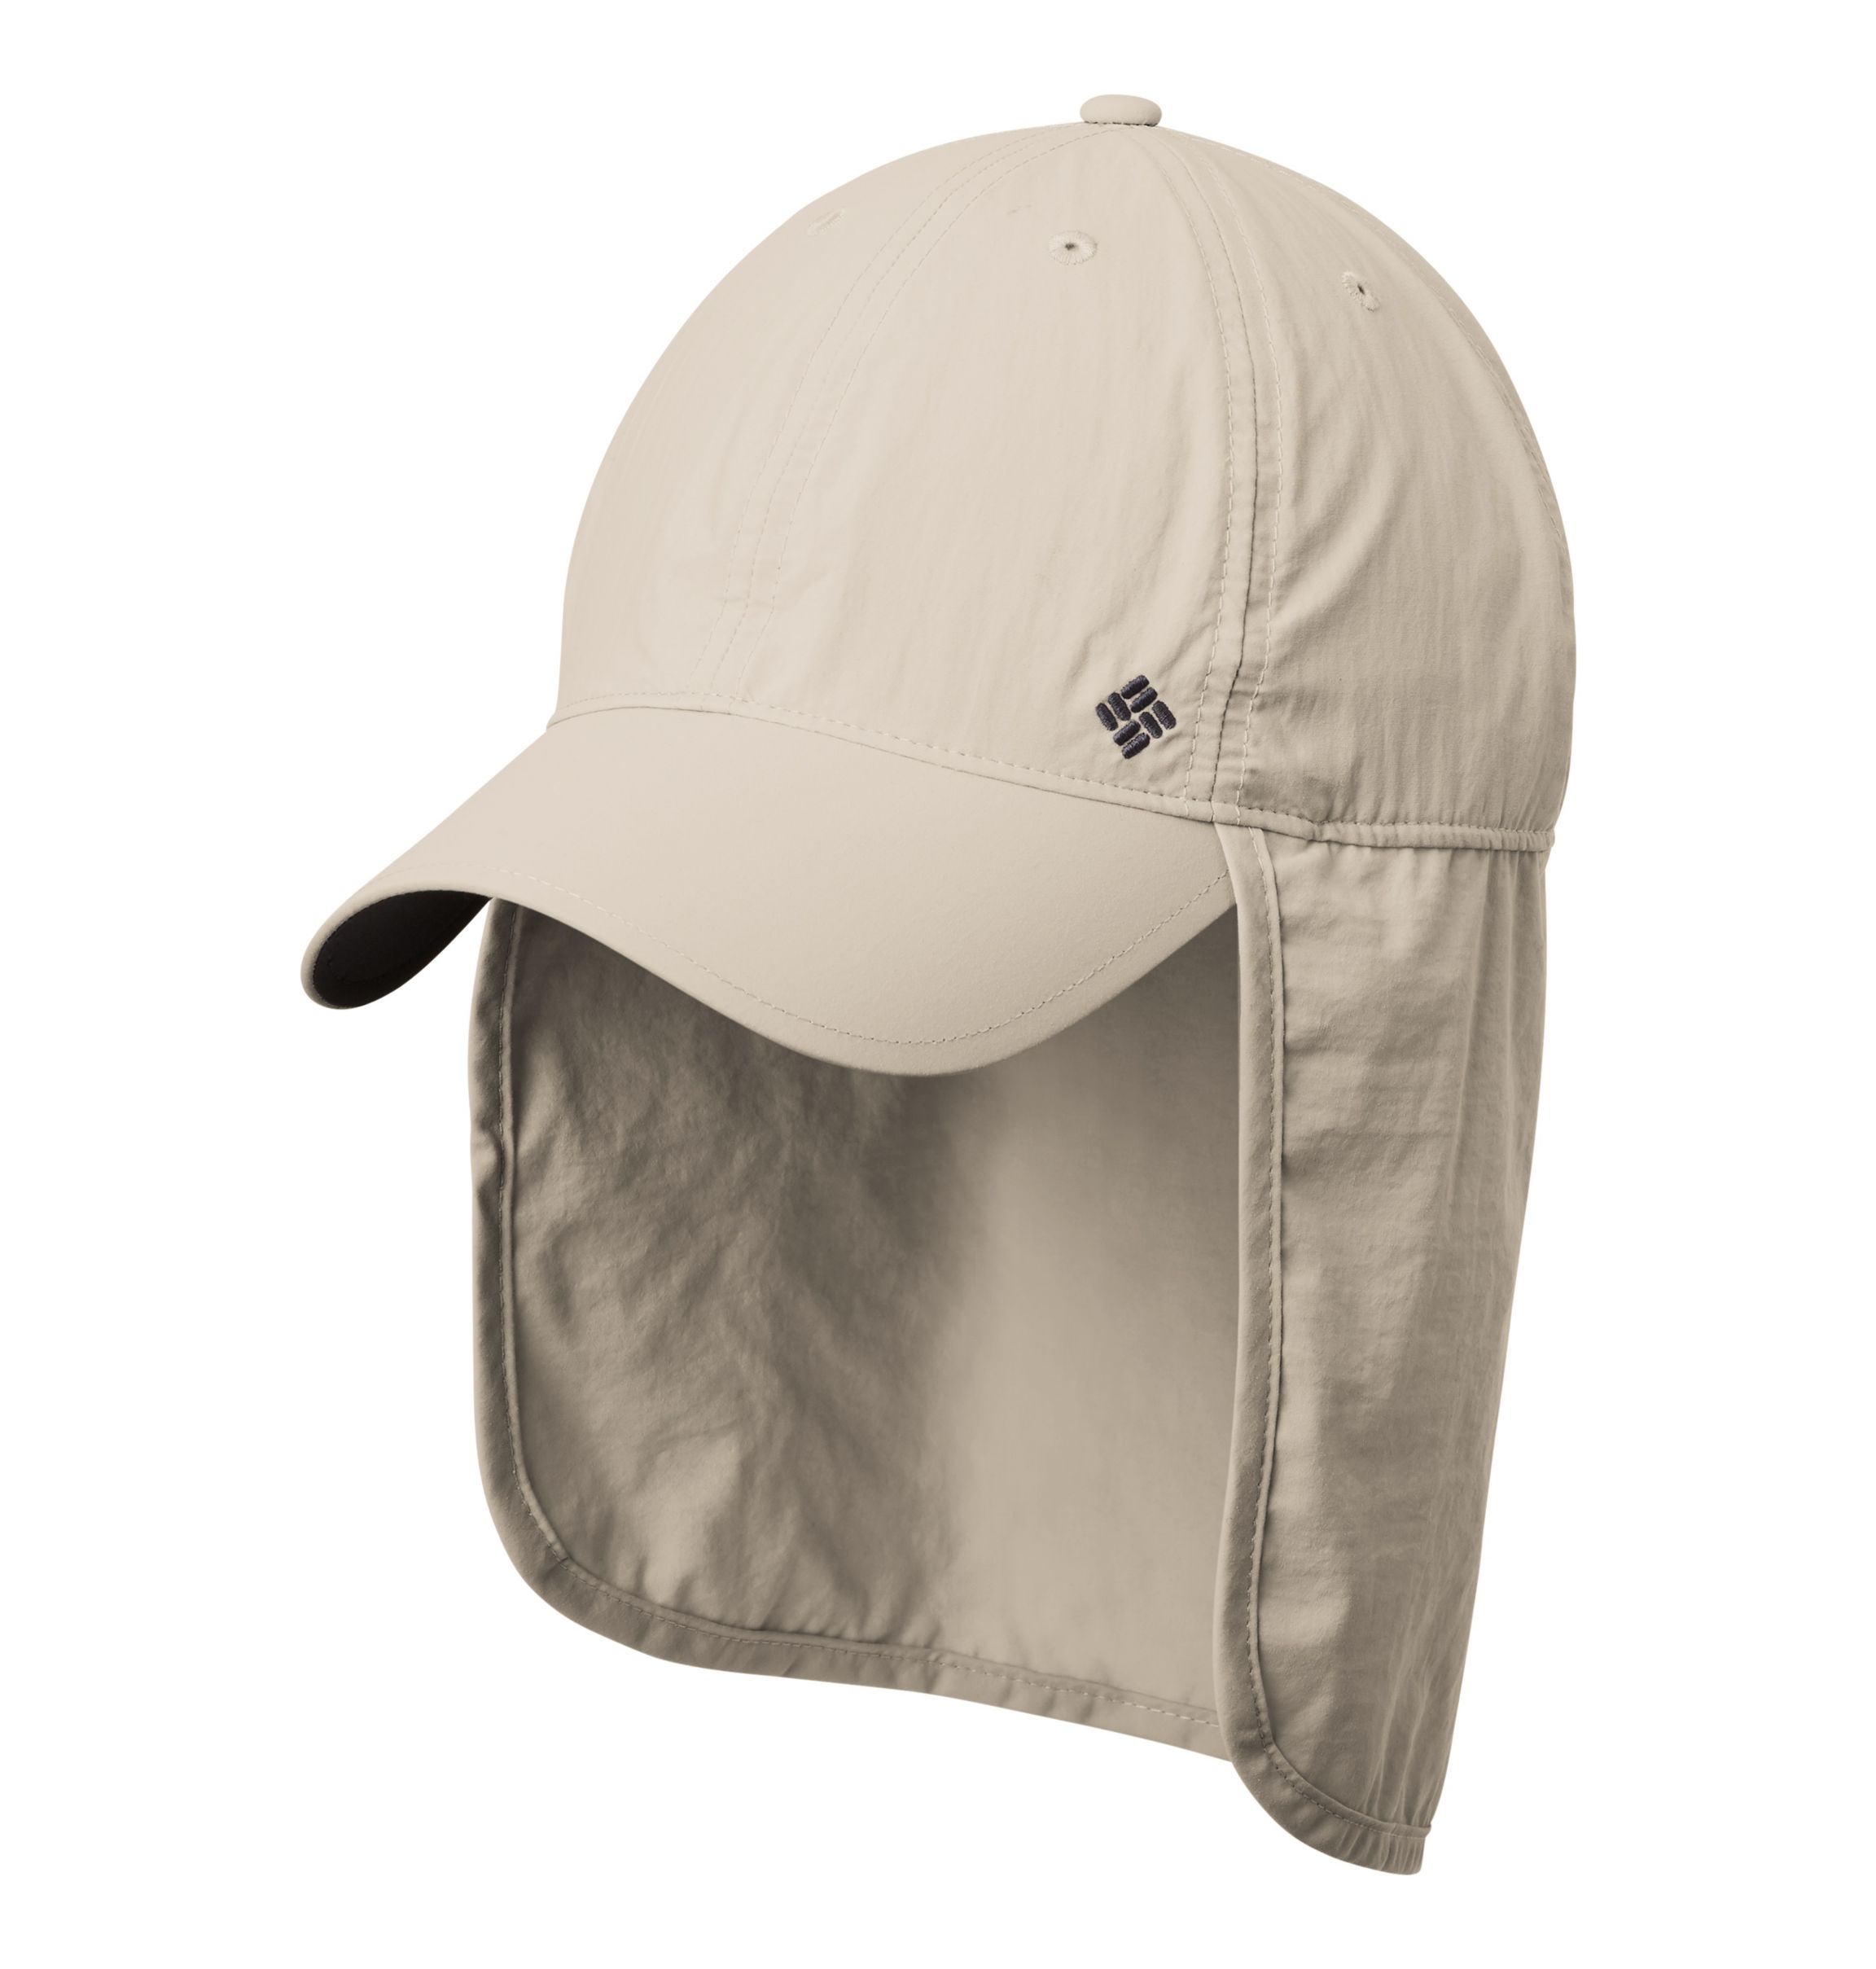 Columbia PFG Hat Omni-Shade Neck Cover Flap UPF 30 Fishing Sun OSFA Unisex